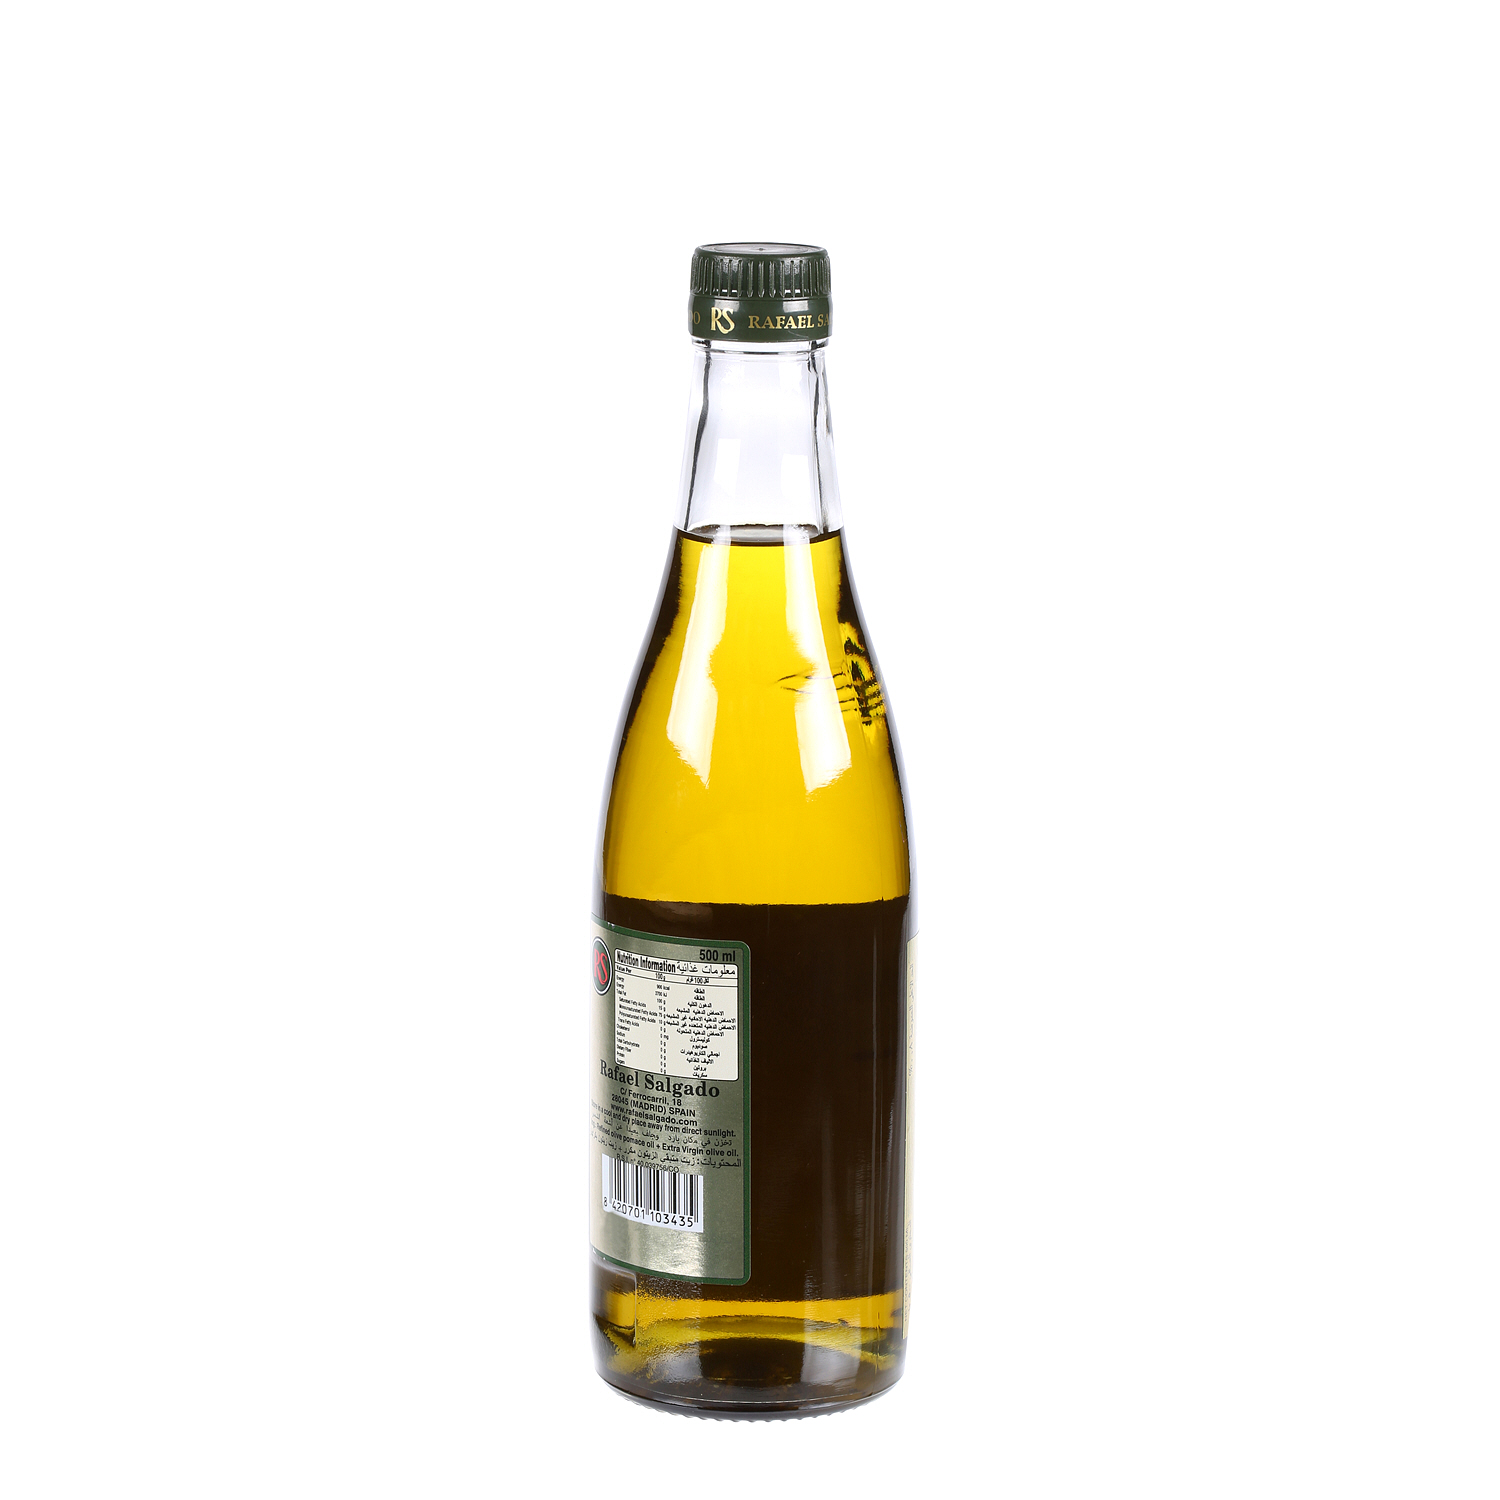 Rafael Salgado Olive Oil 500 ml